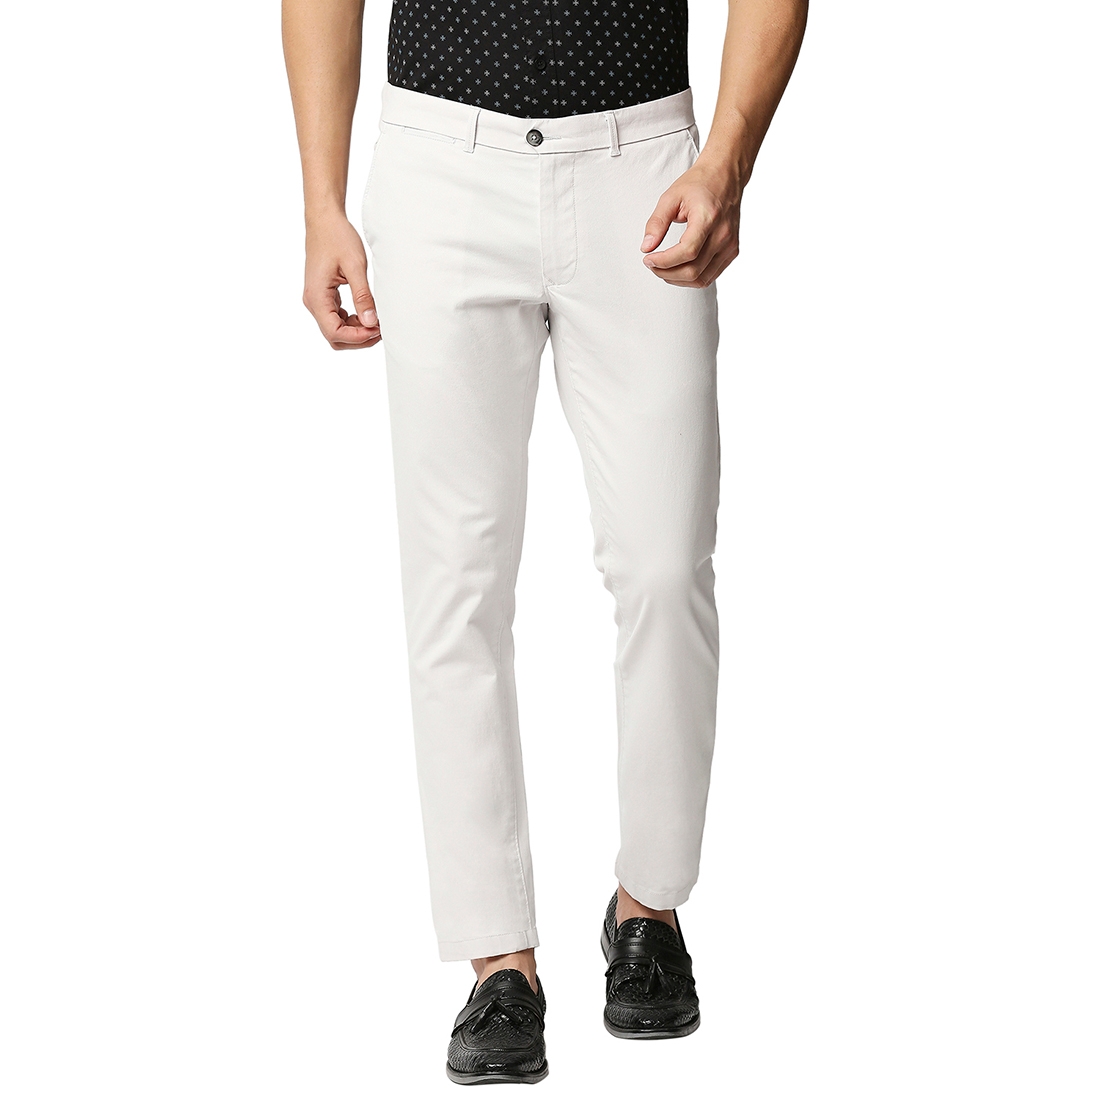 Men's White Cotton Blend Solid Trouser